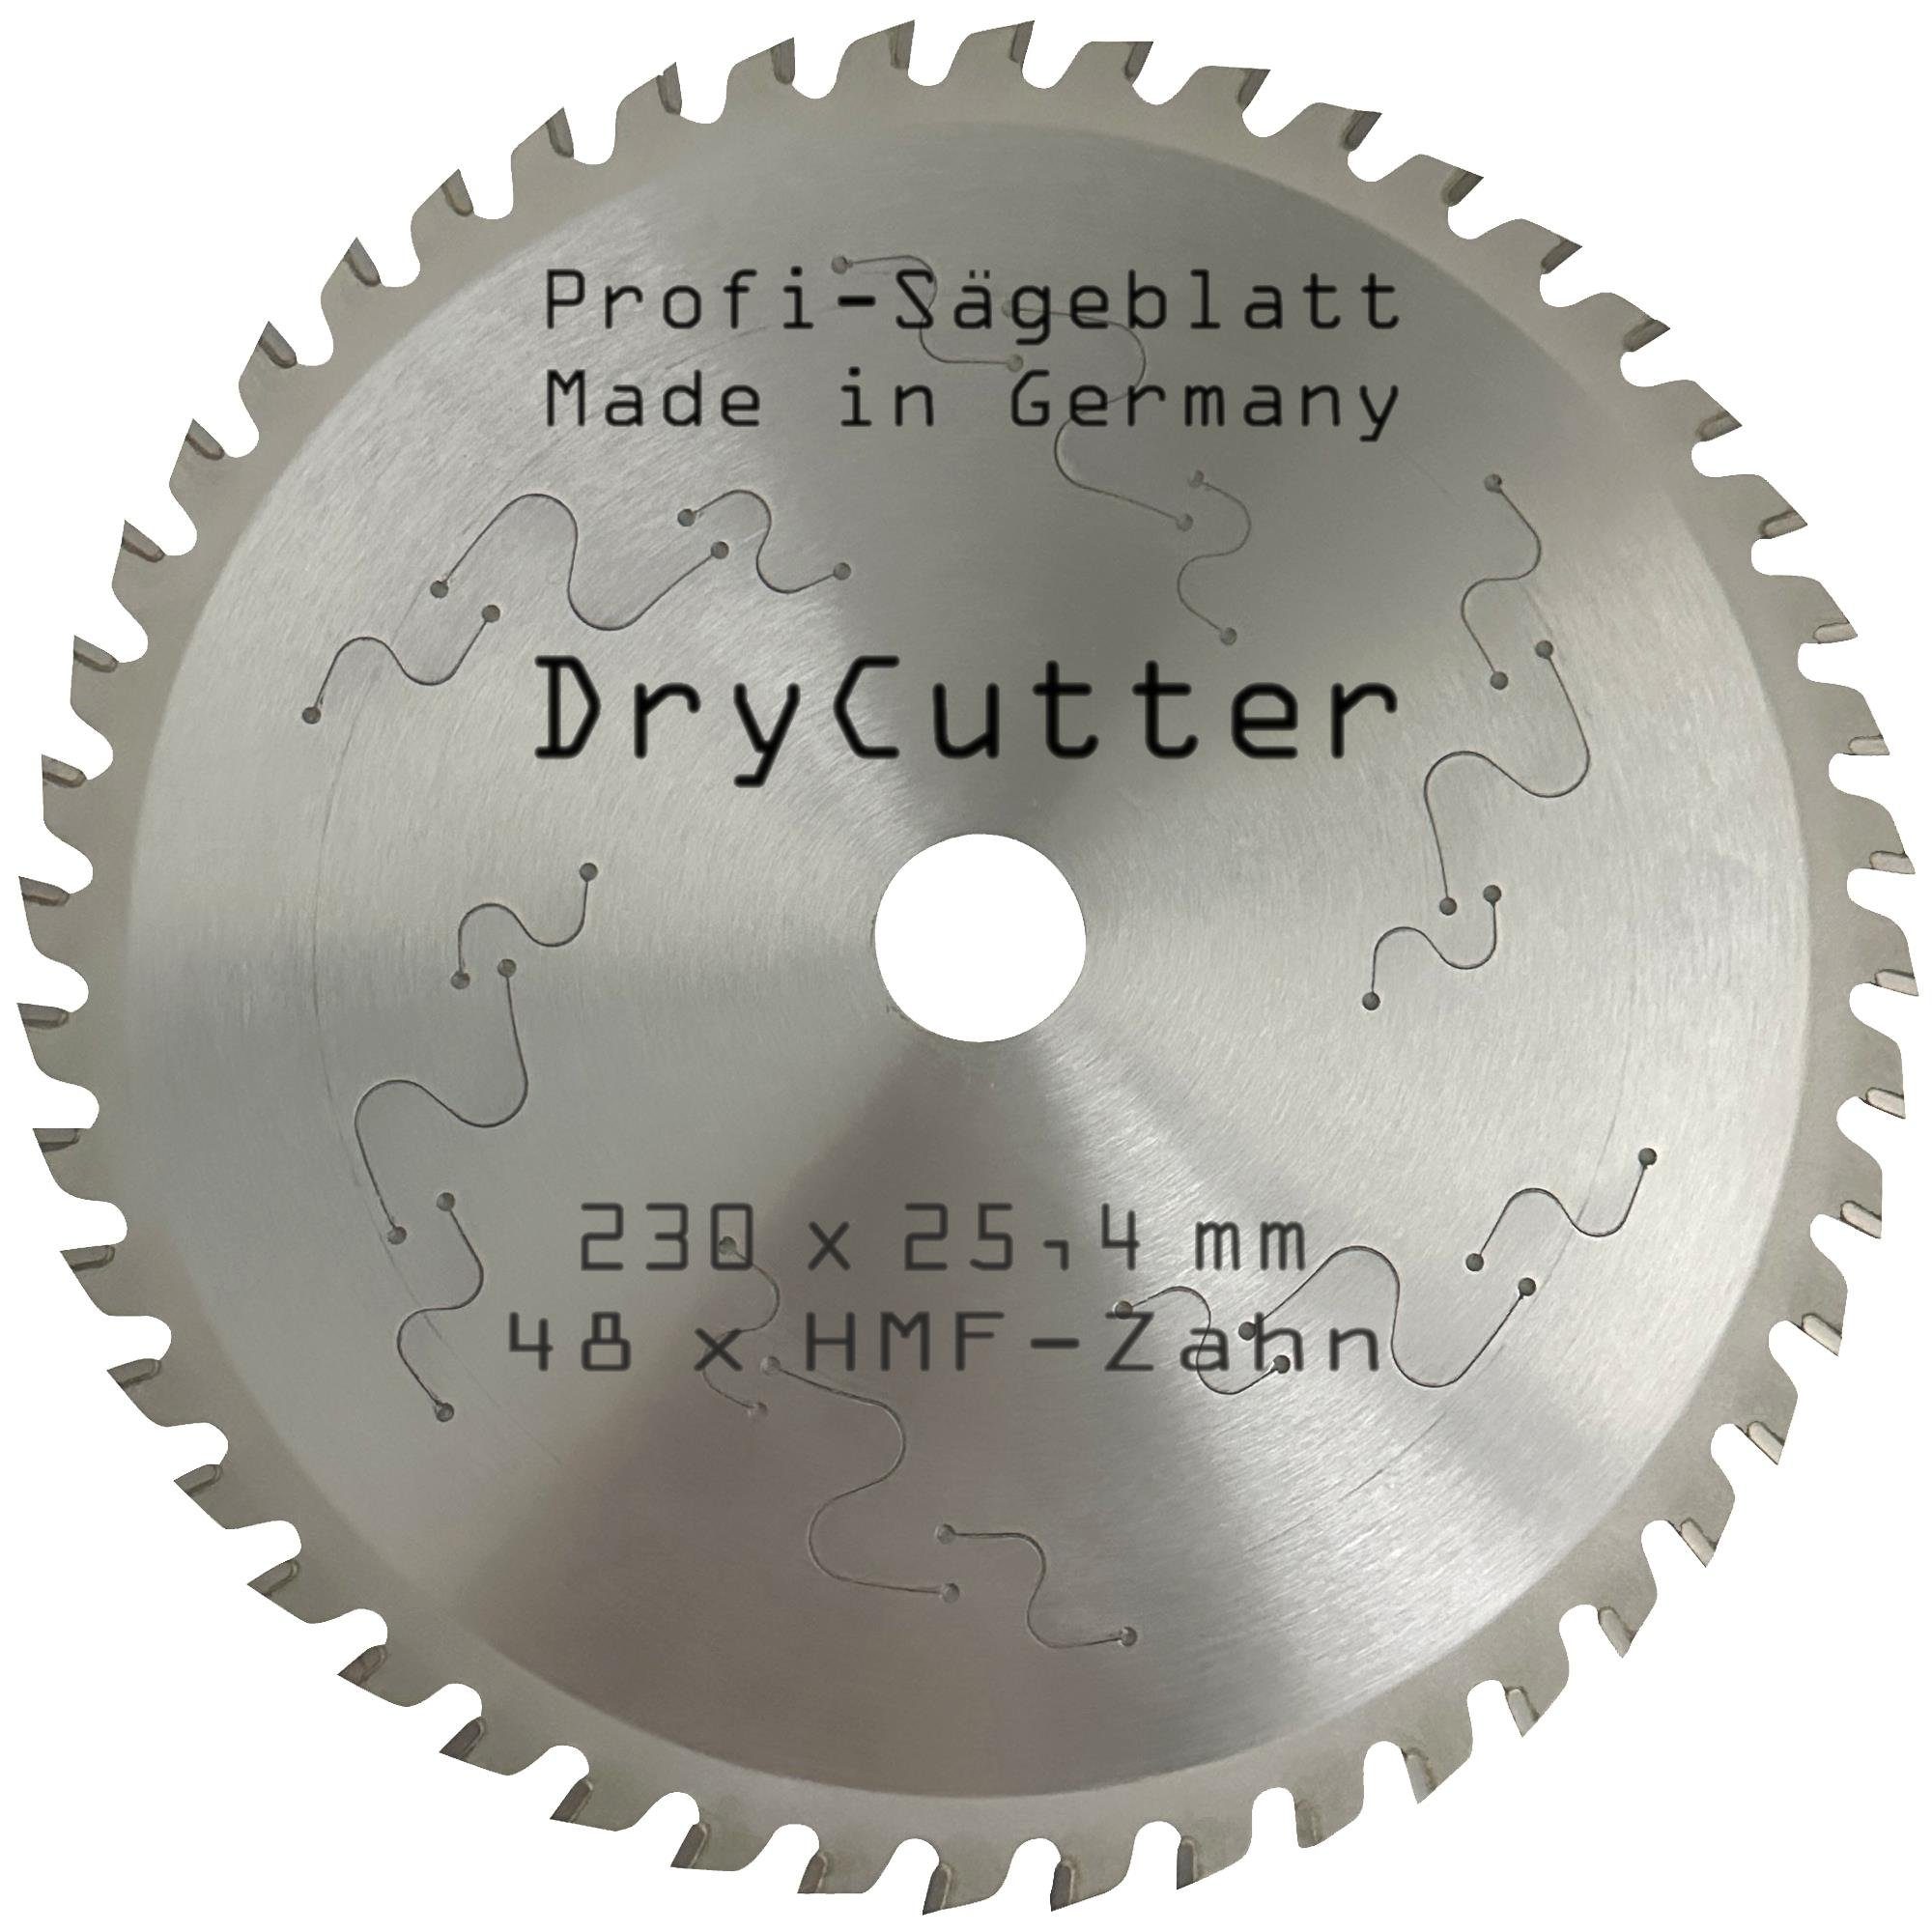 BauSupermarkt24 Kreissägeblatt Sägeblatt Dry-Cutter 230 x 25,4 mm für Kreissäge Alu Kunstoff Stahl